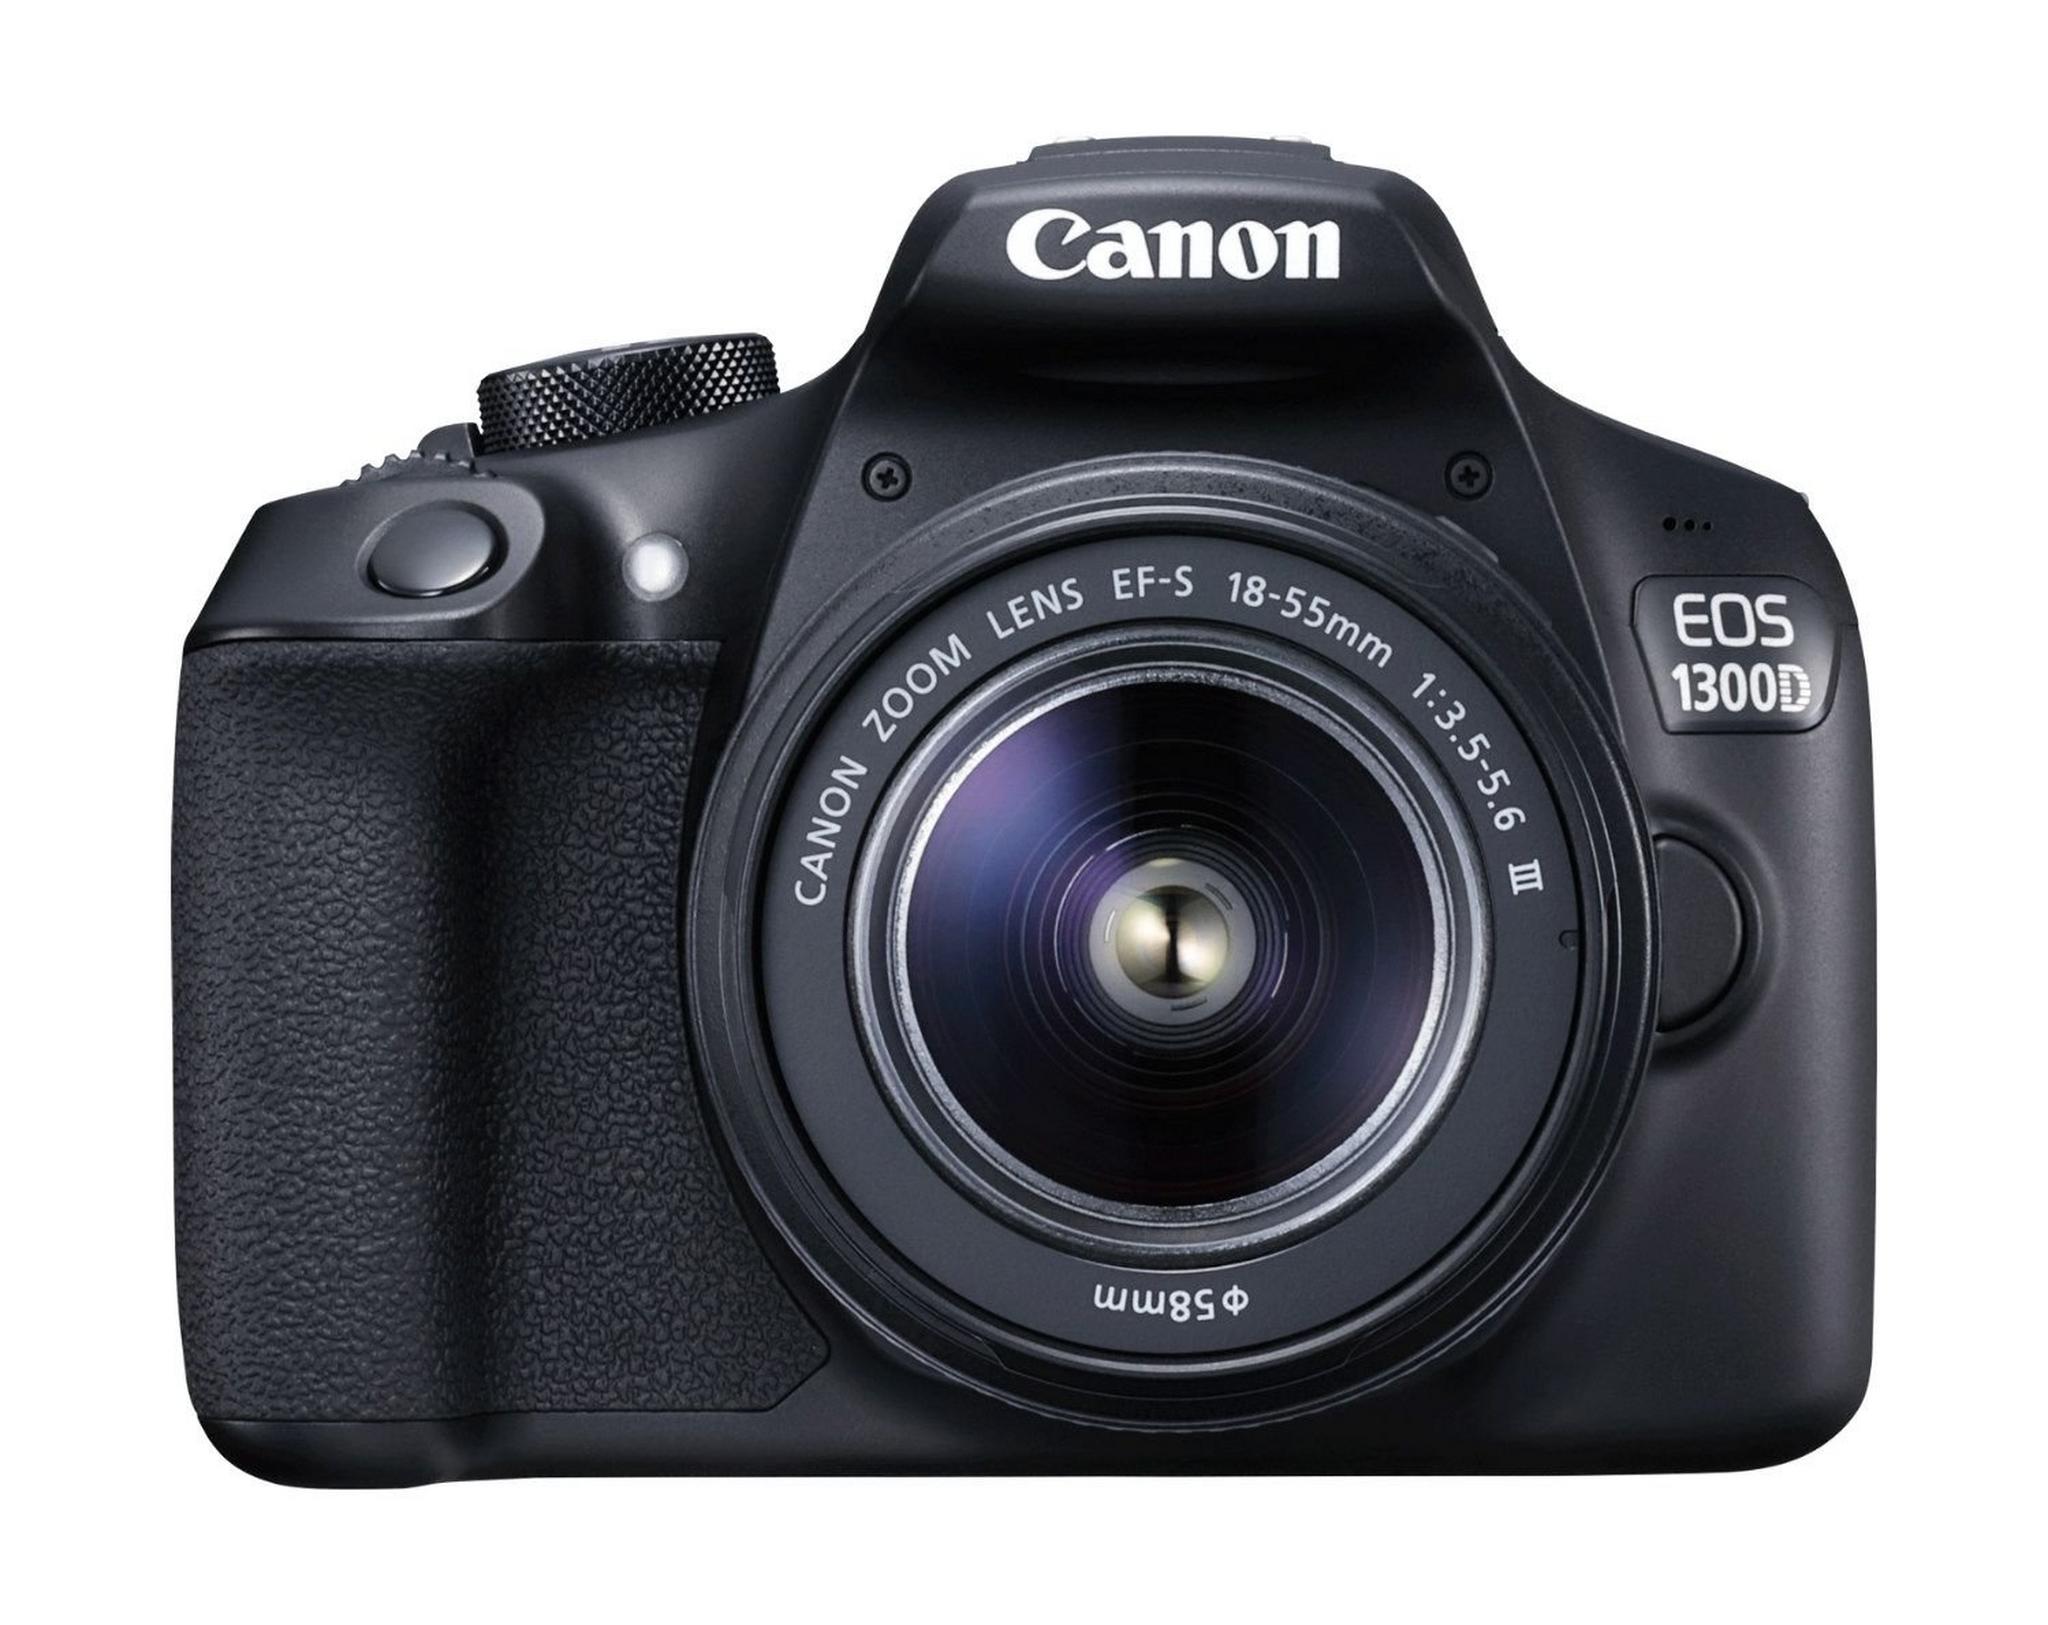 كاميرا كانون الرقمية إس إل آر بدقة ١٨ ميجا بكسل مع عدسة تقريب ١٨-٥٥ ملم – واي فاي – أسود (EOS 1300D)